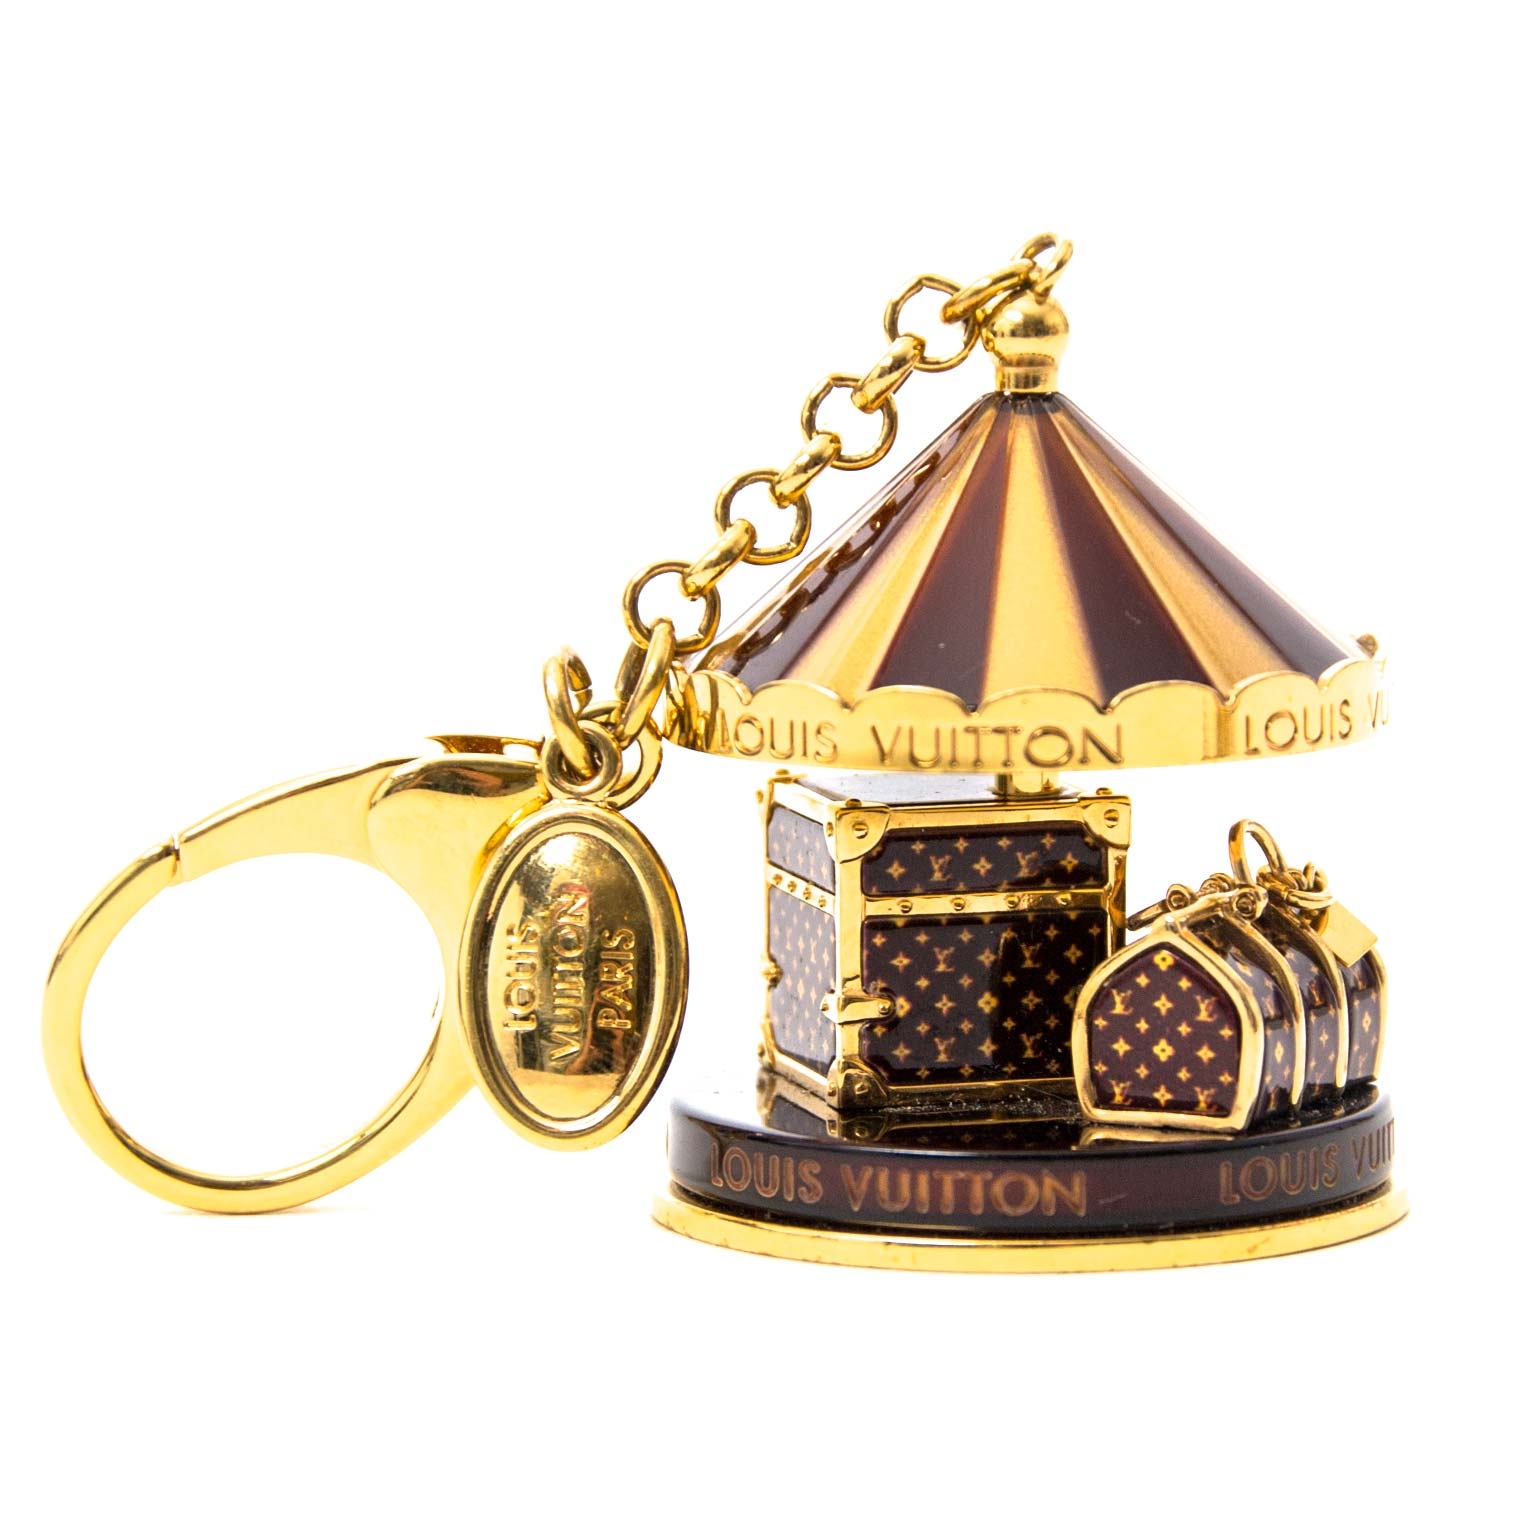 Cadenas bag charm Louis Vuitton Gold in Metal - 19131935